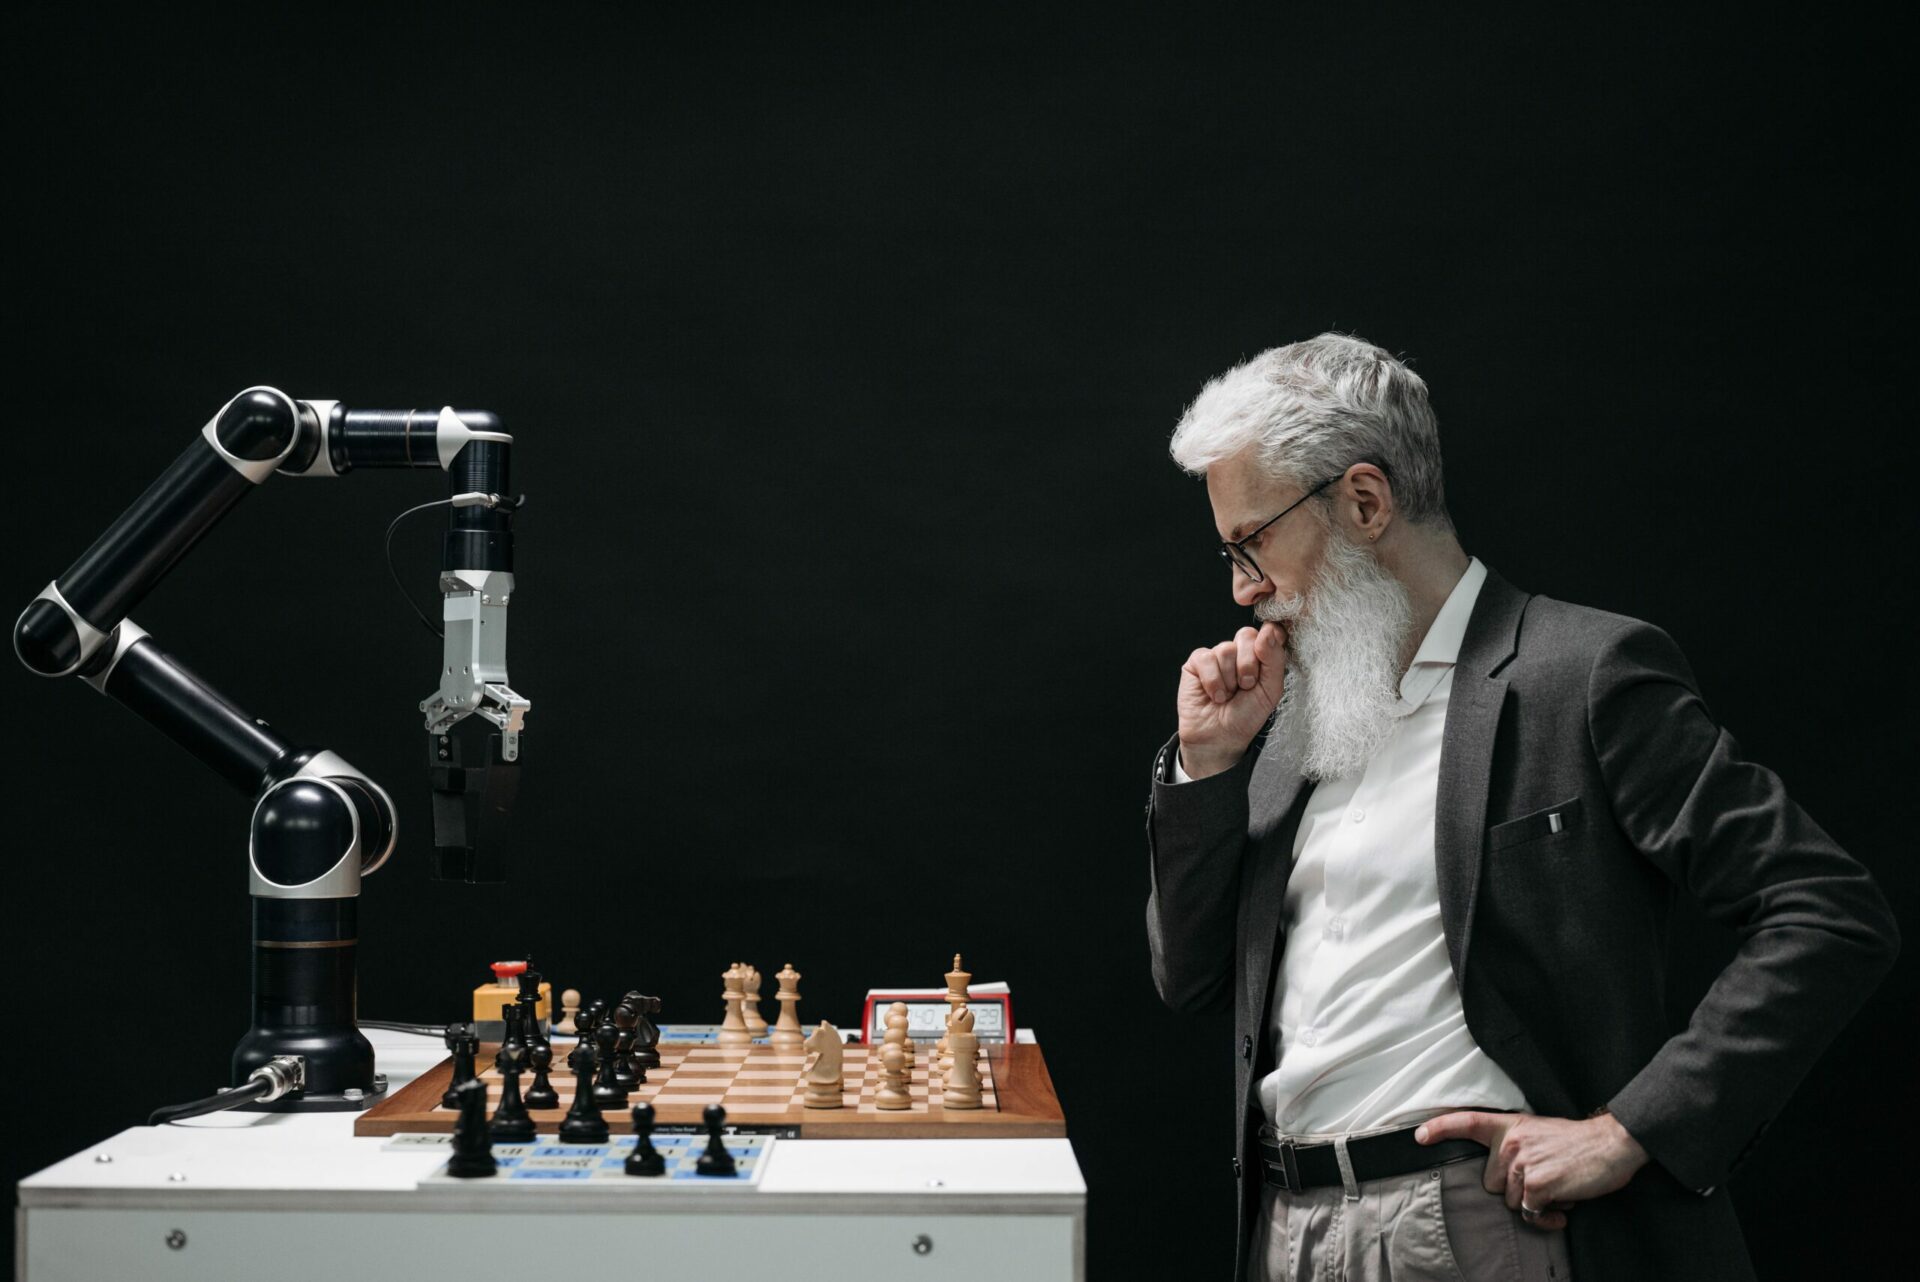 Roboter spielt gegen einen älteren Mann Schach